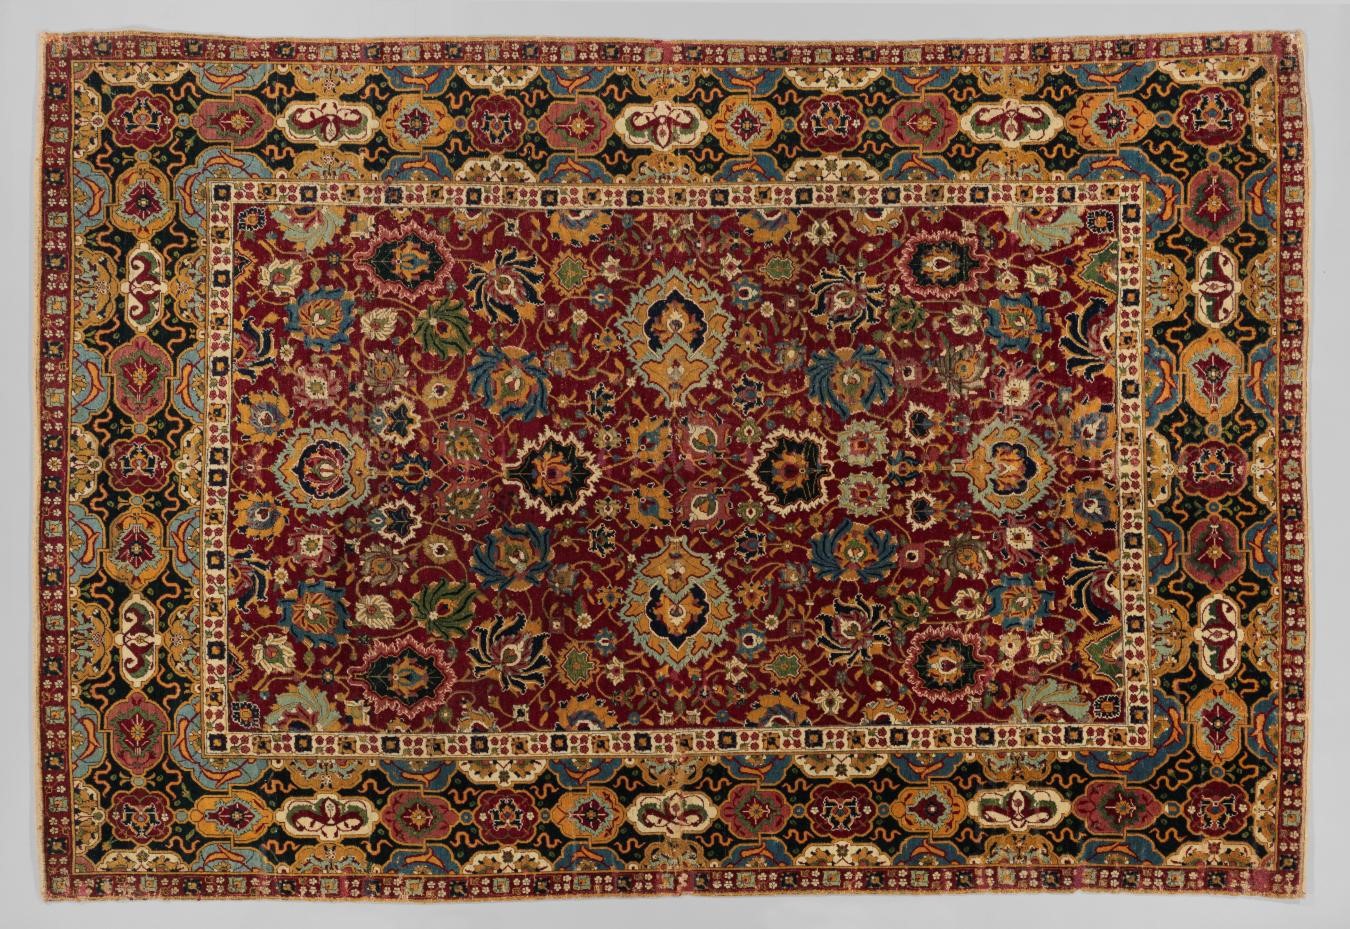 Iranian, Carpet